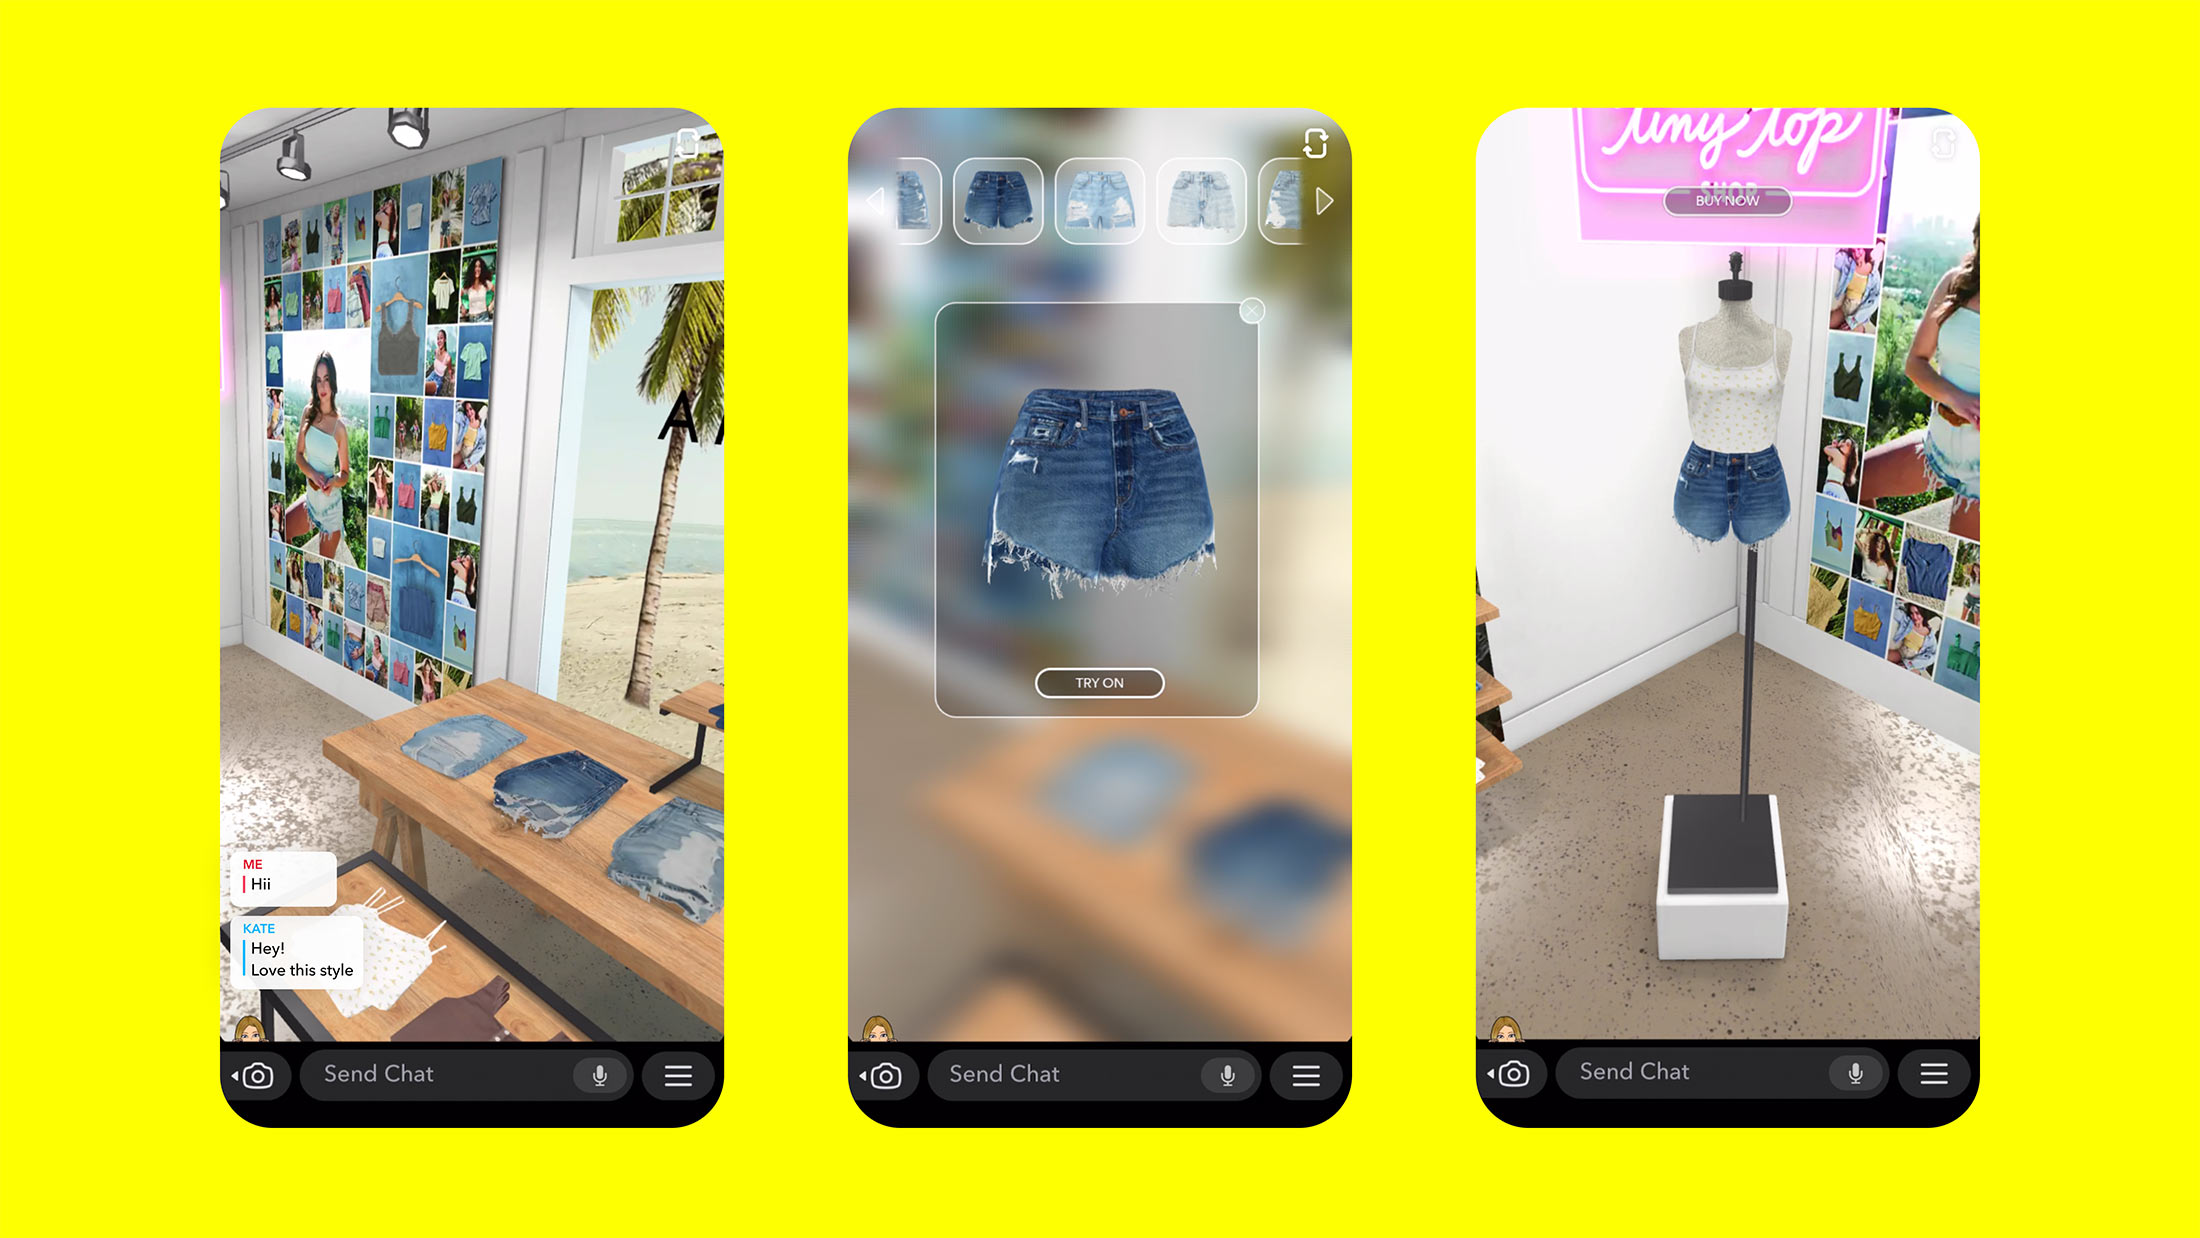 Snapchat is adding TikTok-like AR music lenses